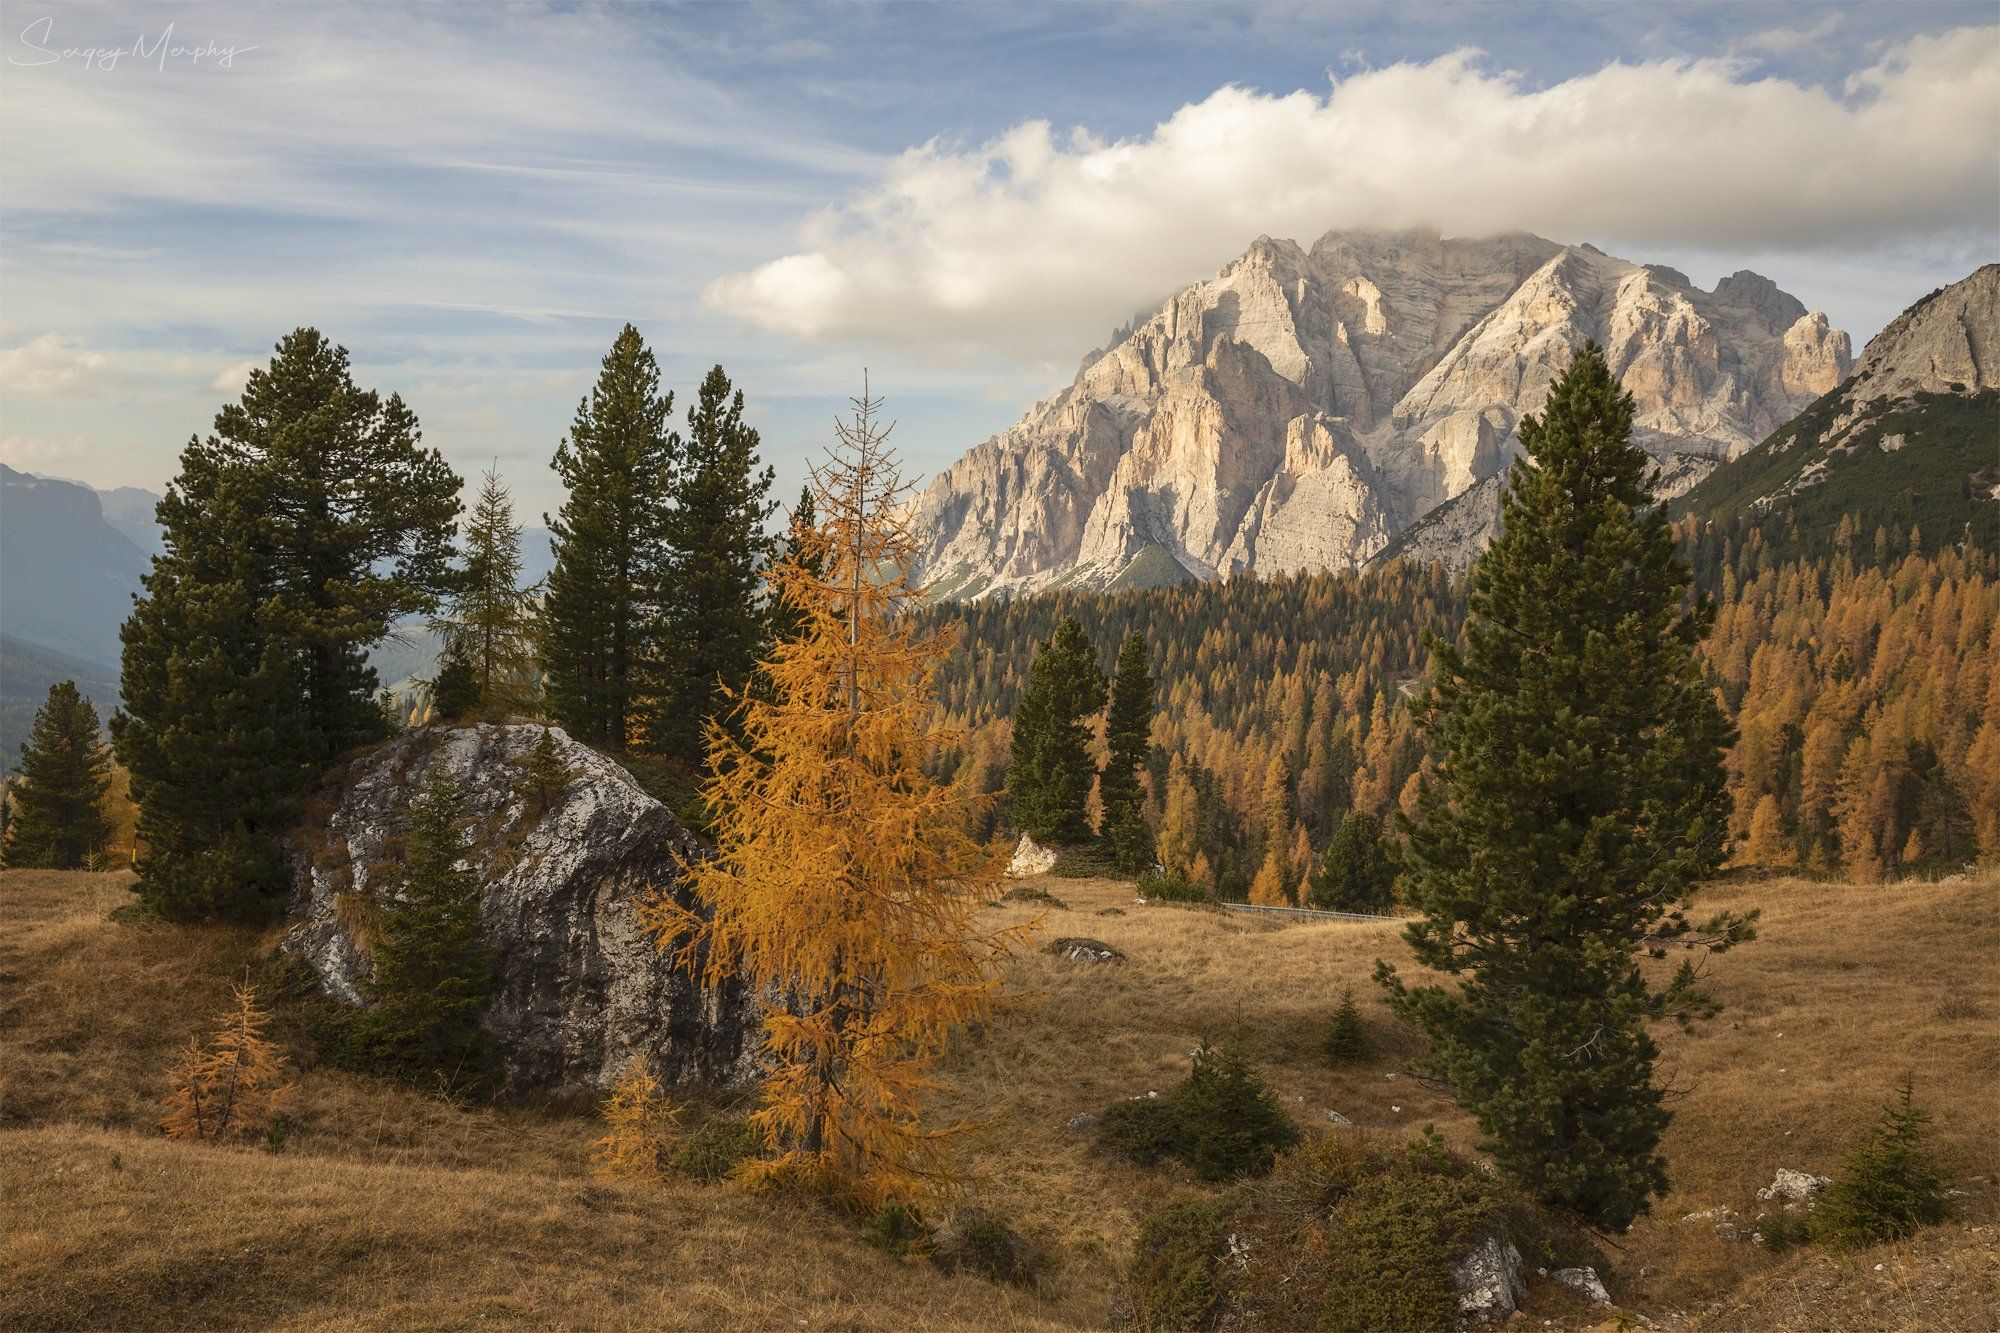 Autumn Dolomites, Sergey Merphy